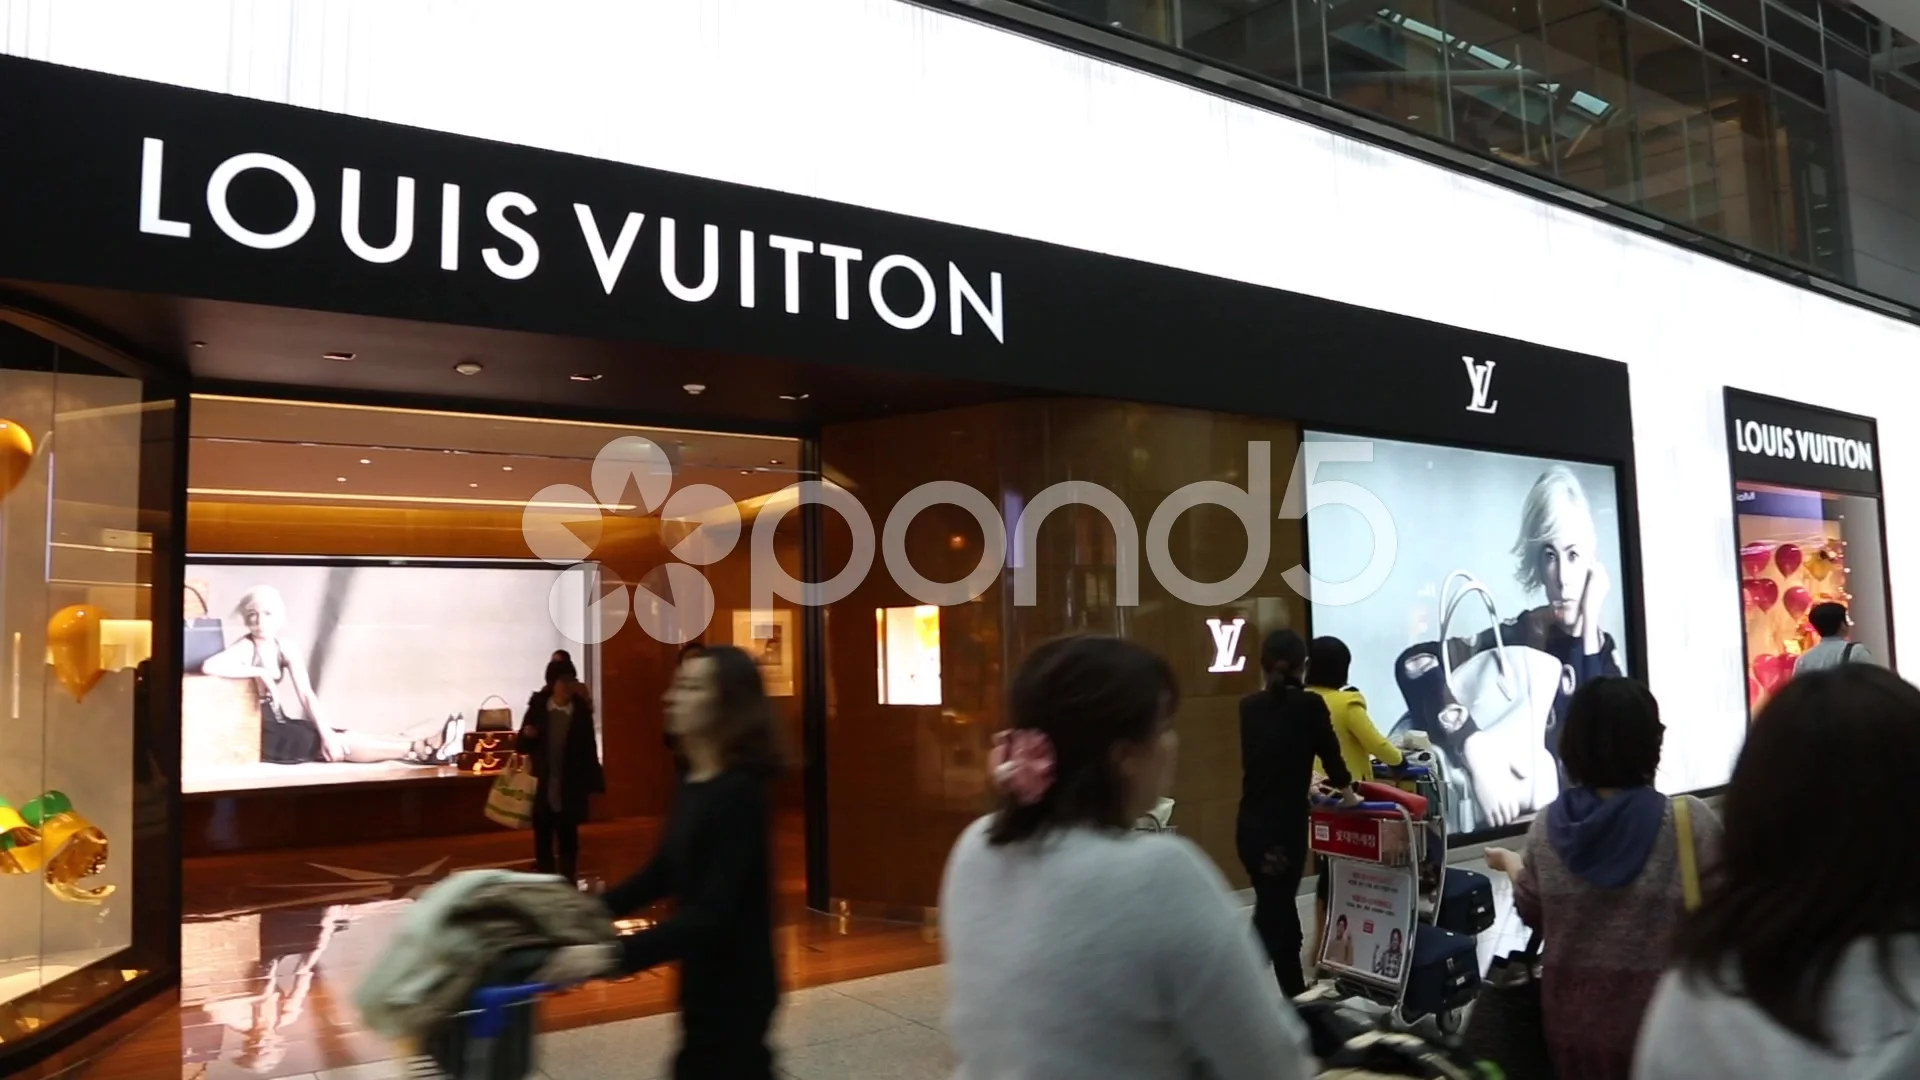 SINGAPORE - CIRCA NOVEMBER, 2015: interior shot of Louis Vuitton